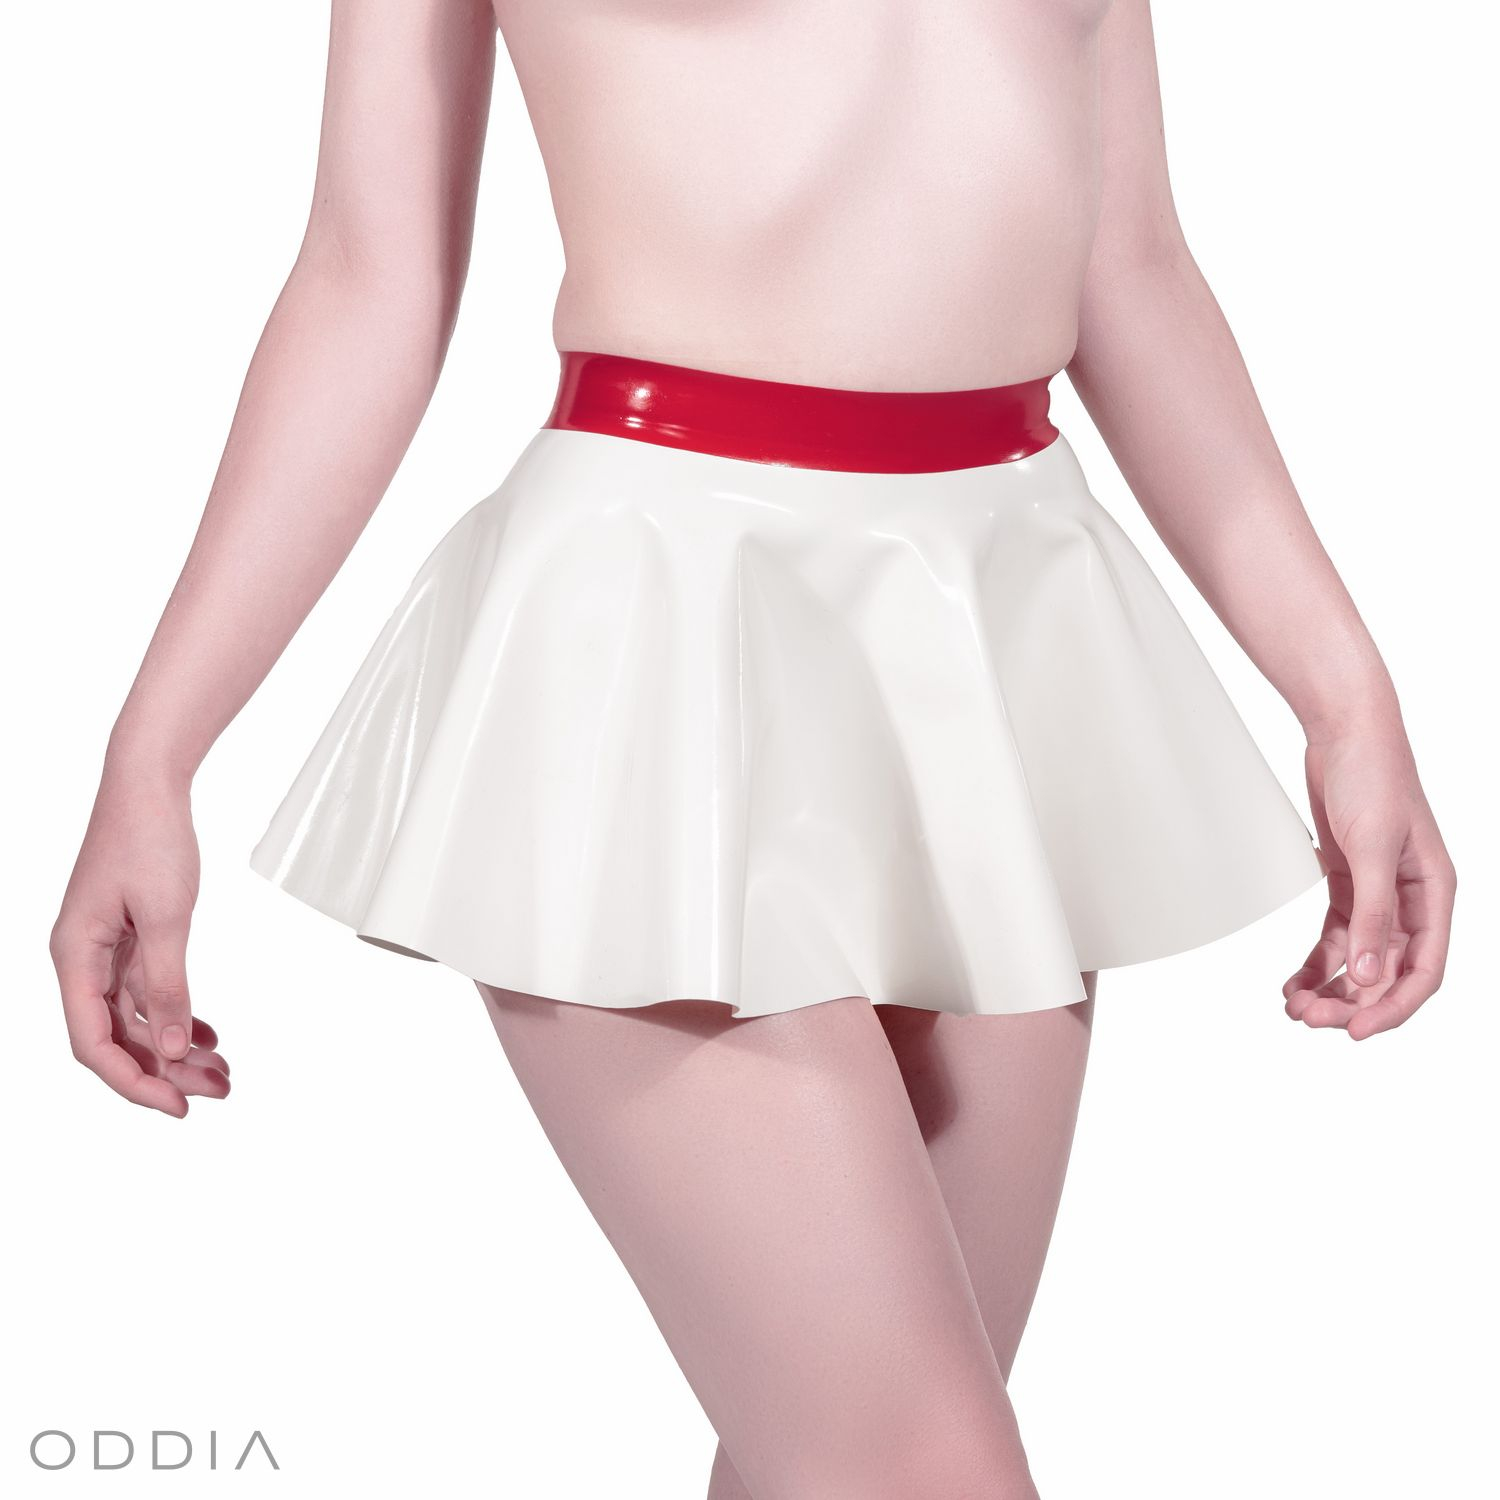 Ein weißer Latex Minirock mit einem konstrastierenden roten Bund